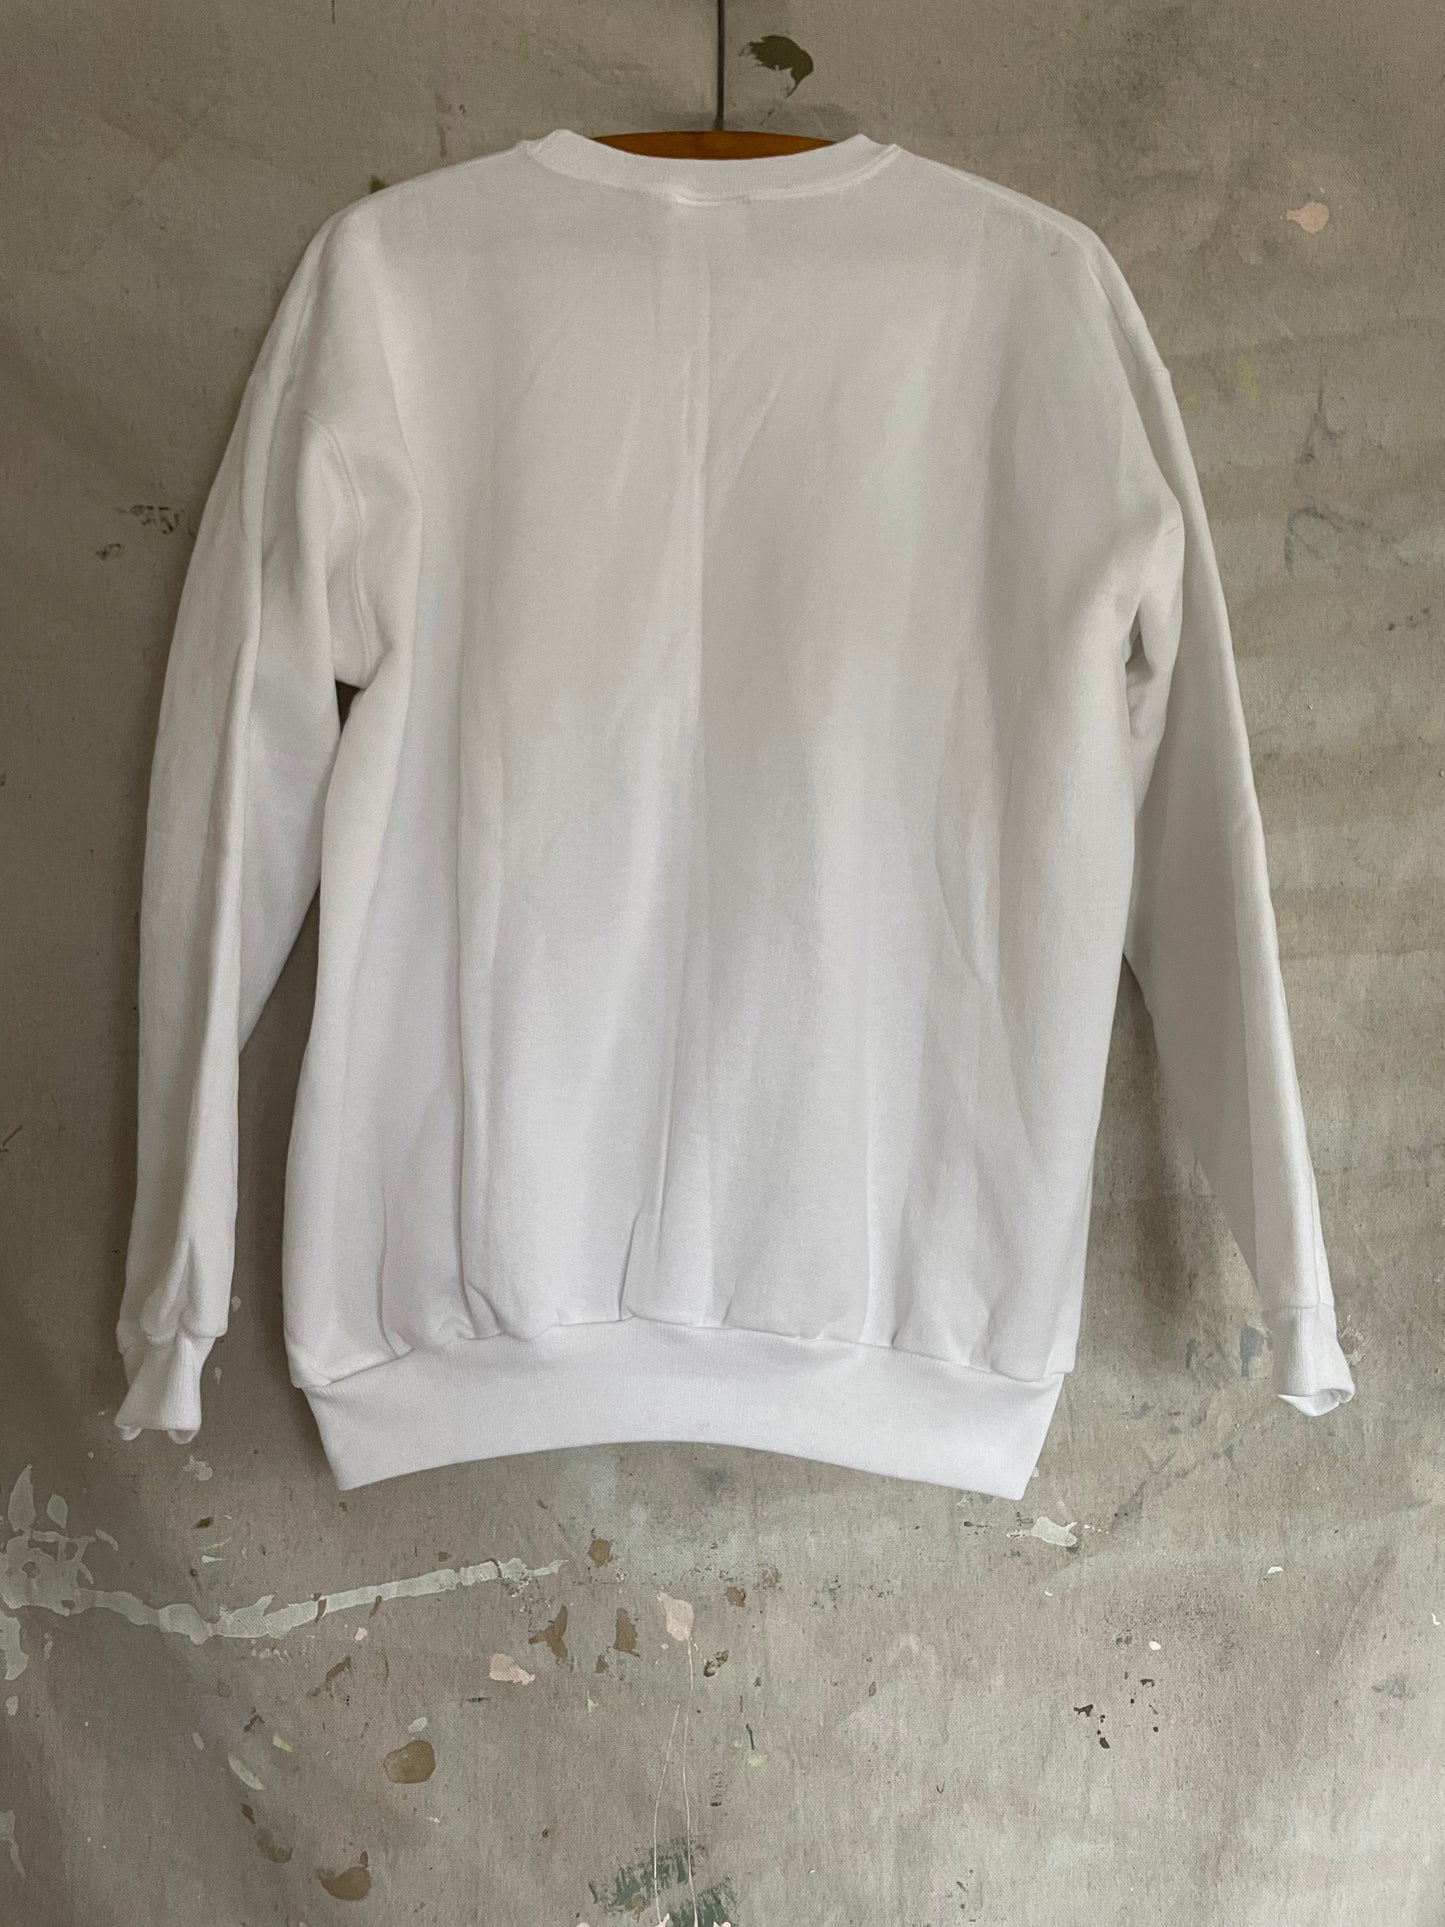 90s Deadstock Blank White Sweatshirt